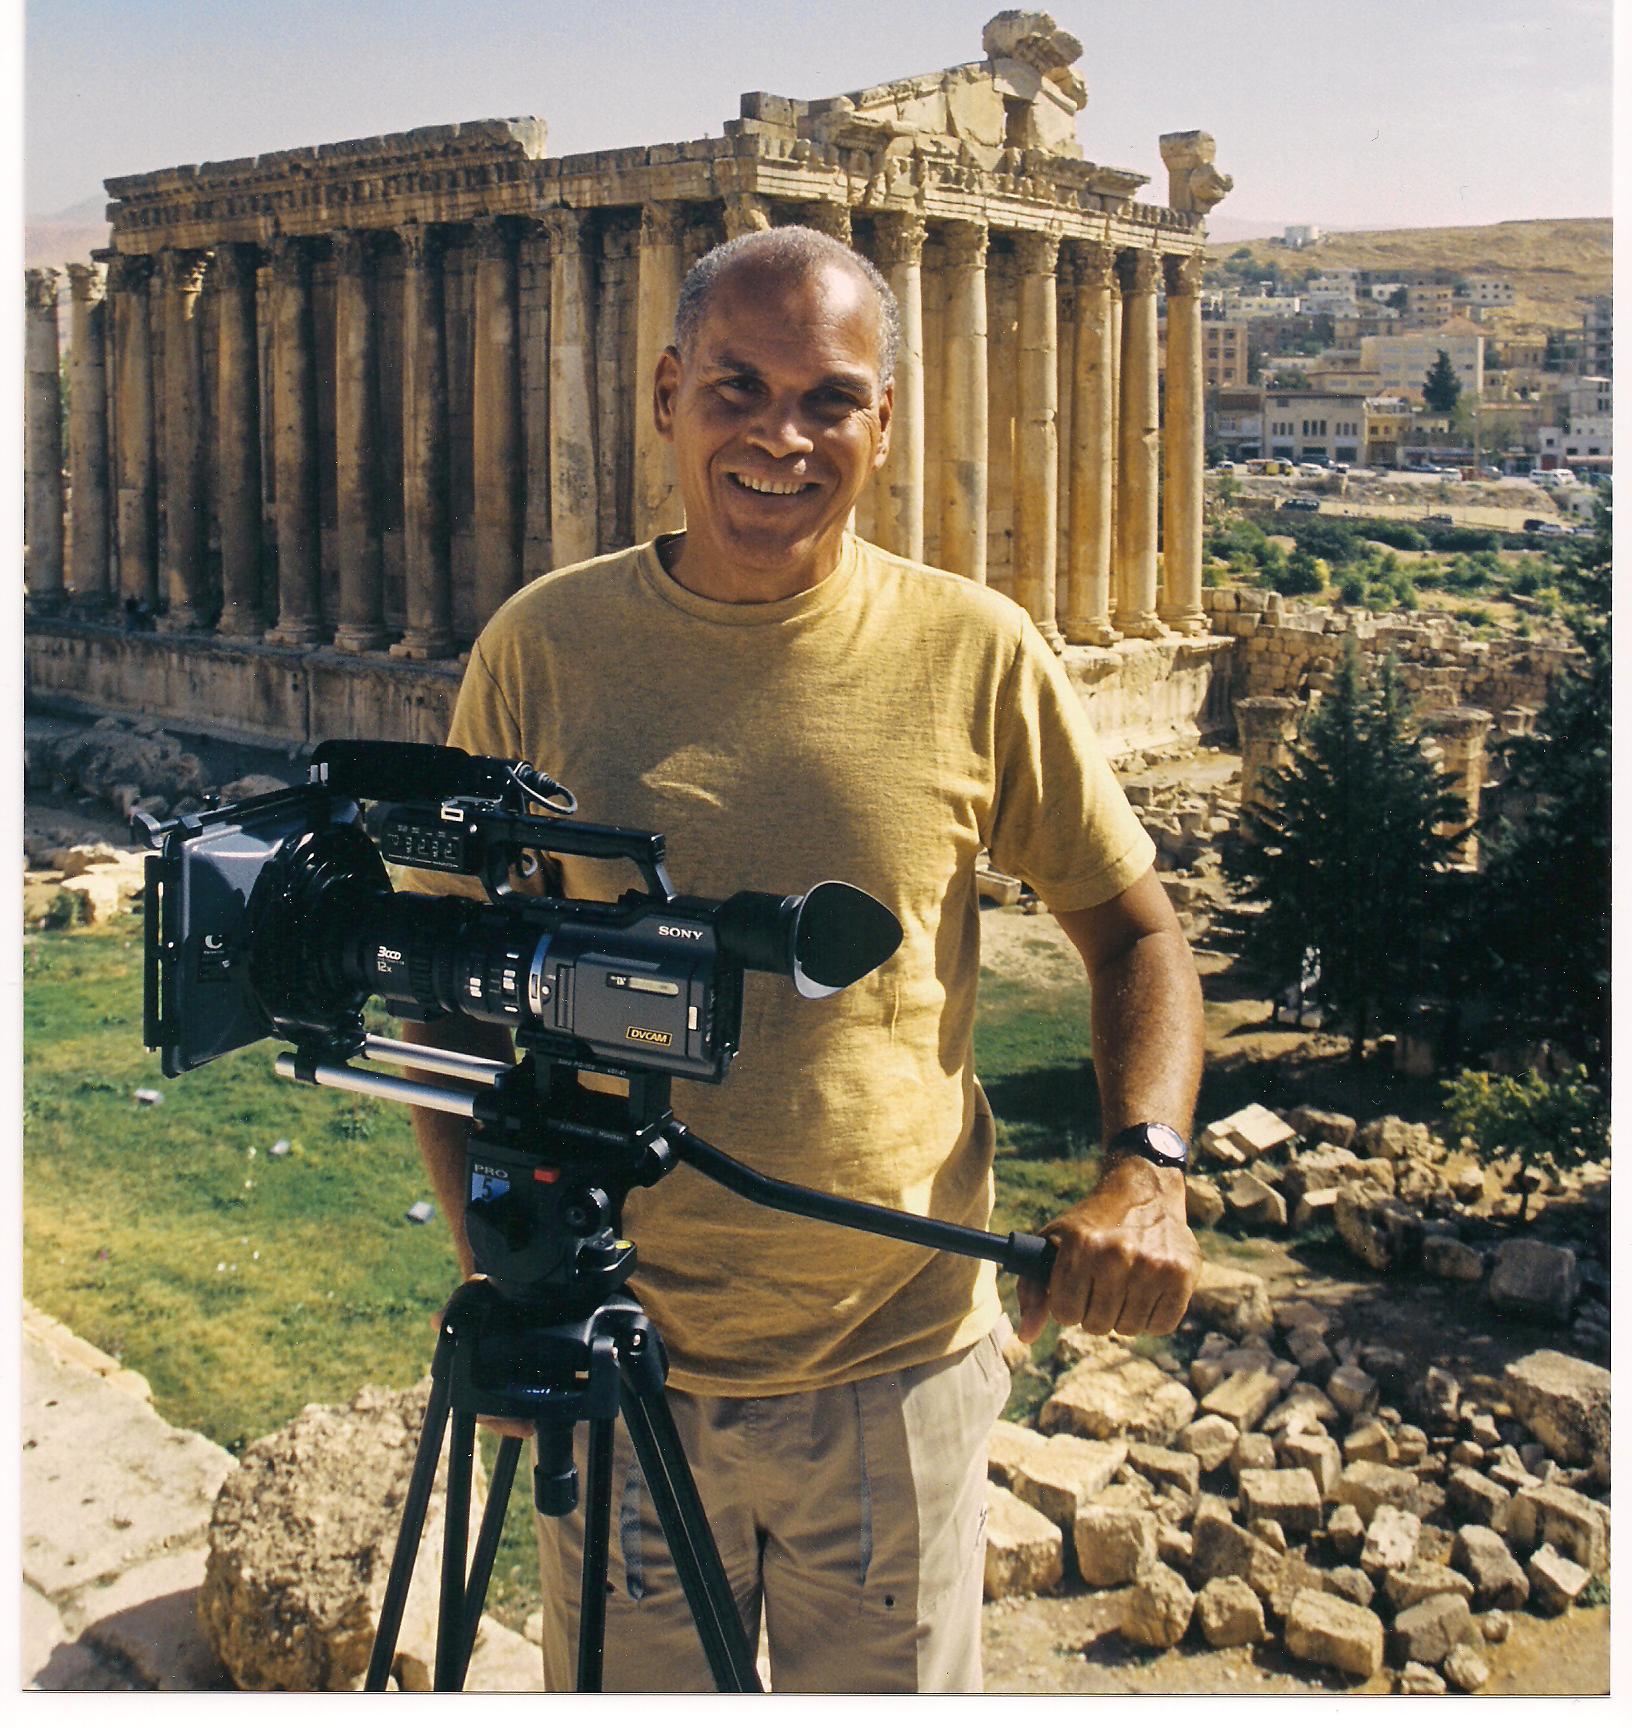 Kreyolicious in Memoriam|Mario Delatour: An Interview on Filmmaking